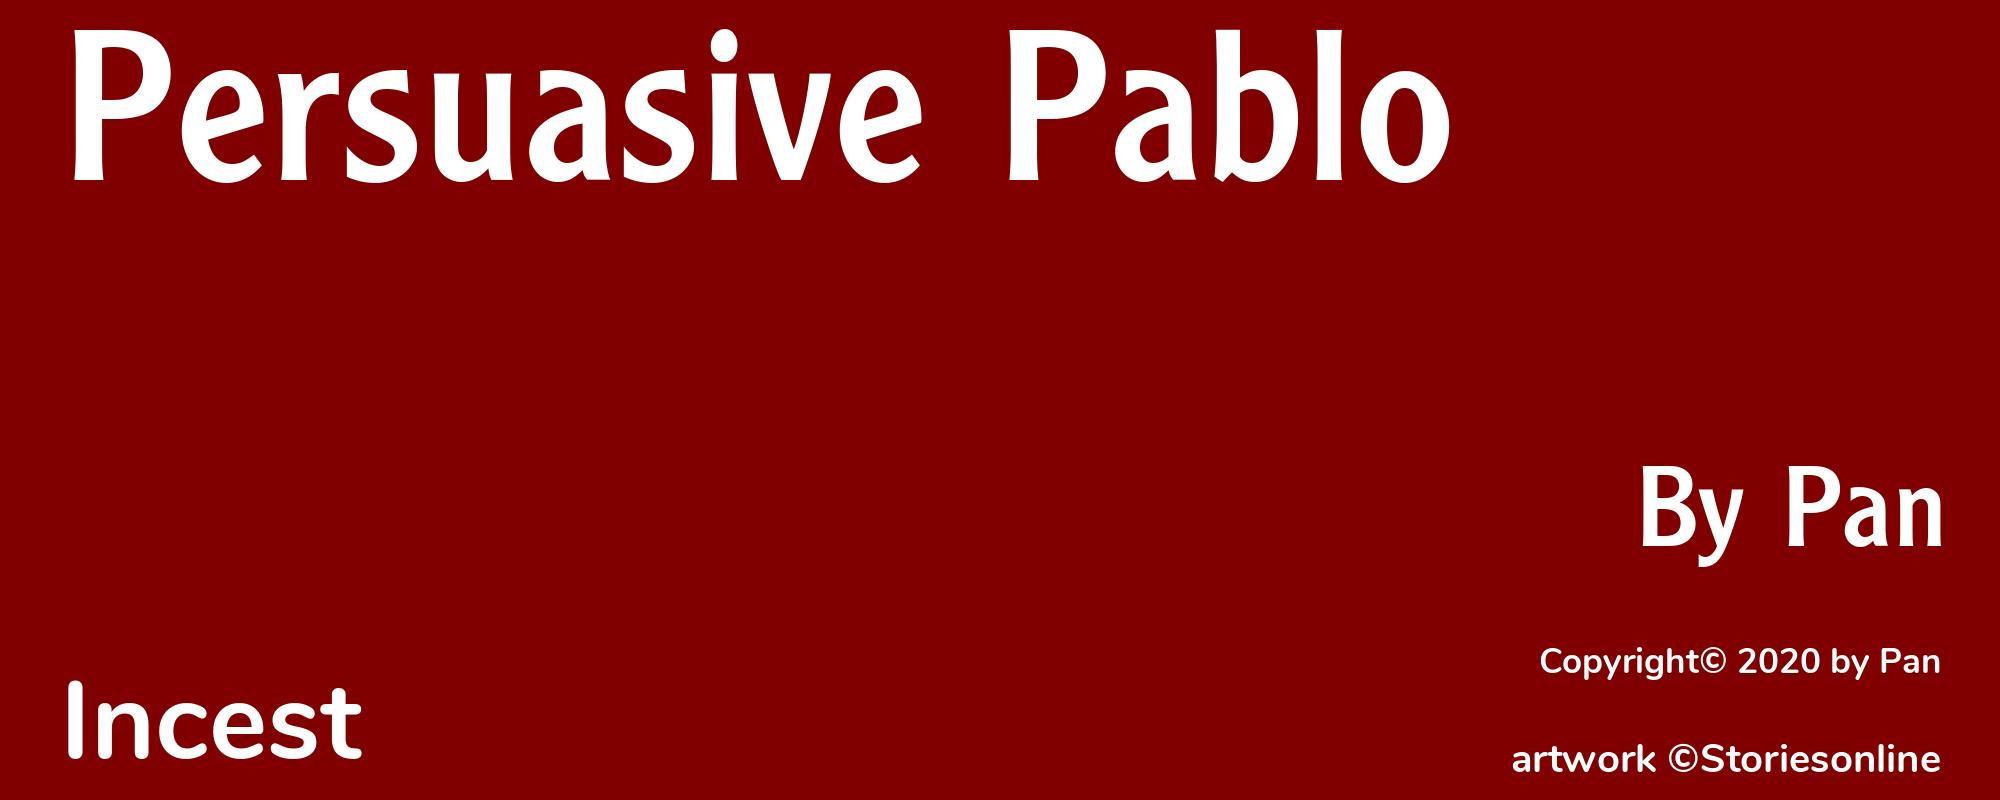 Persuasive Pablo - Cover